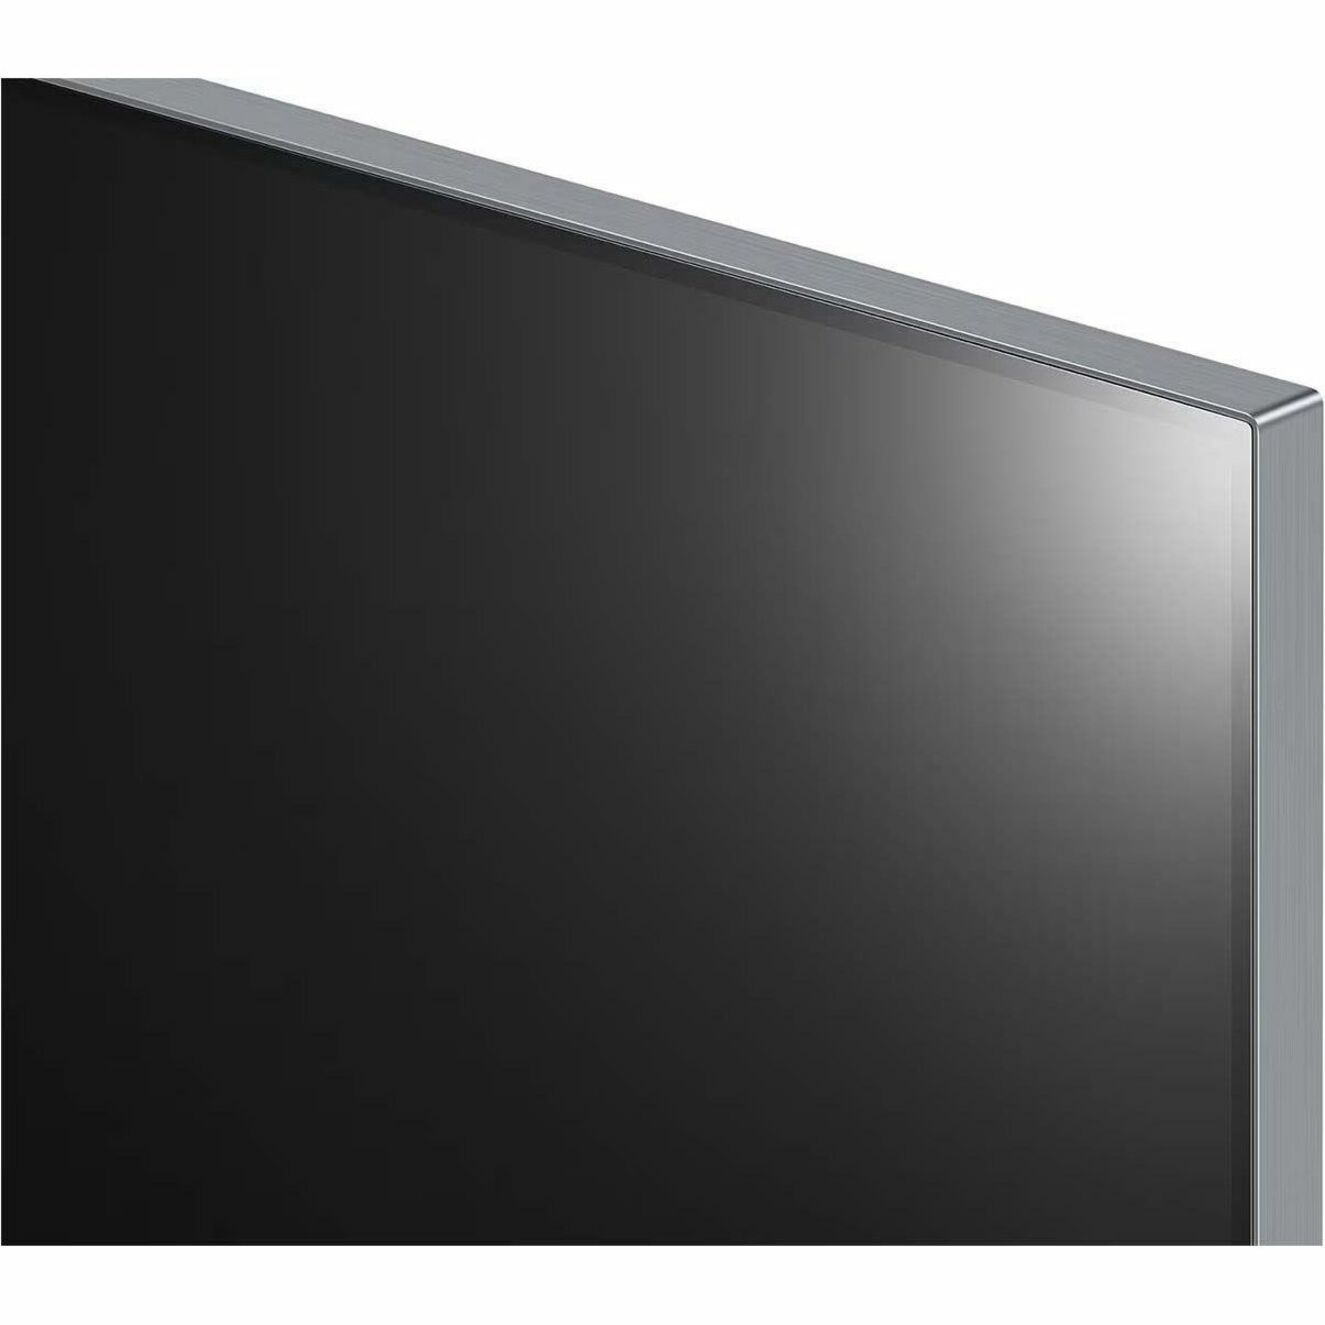 LG OLED65G3PUA evo G3 65 pulgadas 4K Smart TV 2023 Dolby Atmos 120Hz Tasa de Actualización Marca: LG. Traducir: El LG.